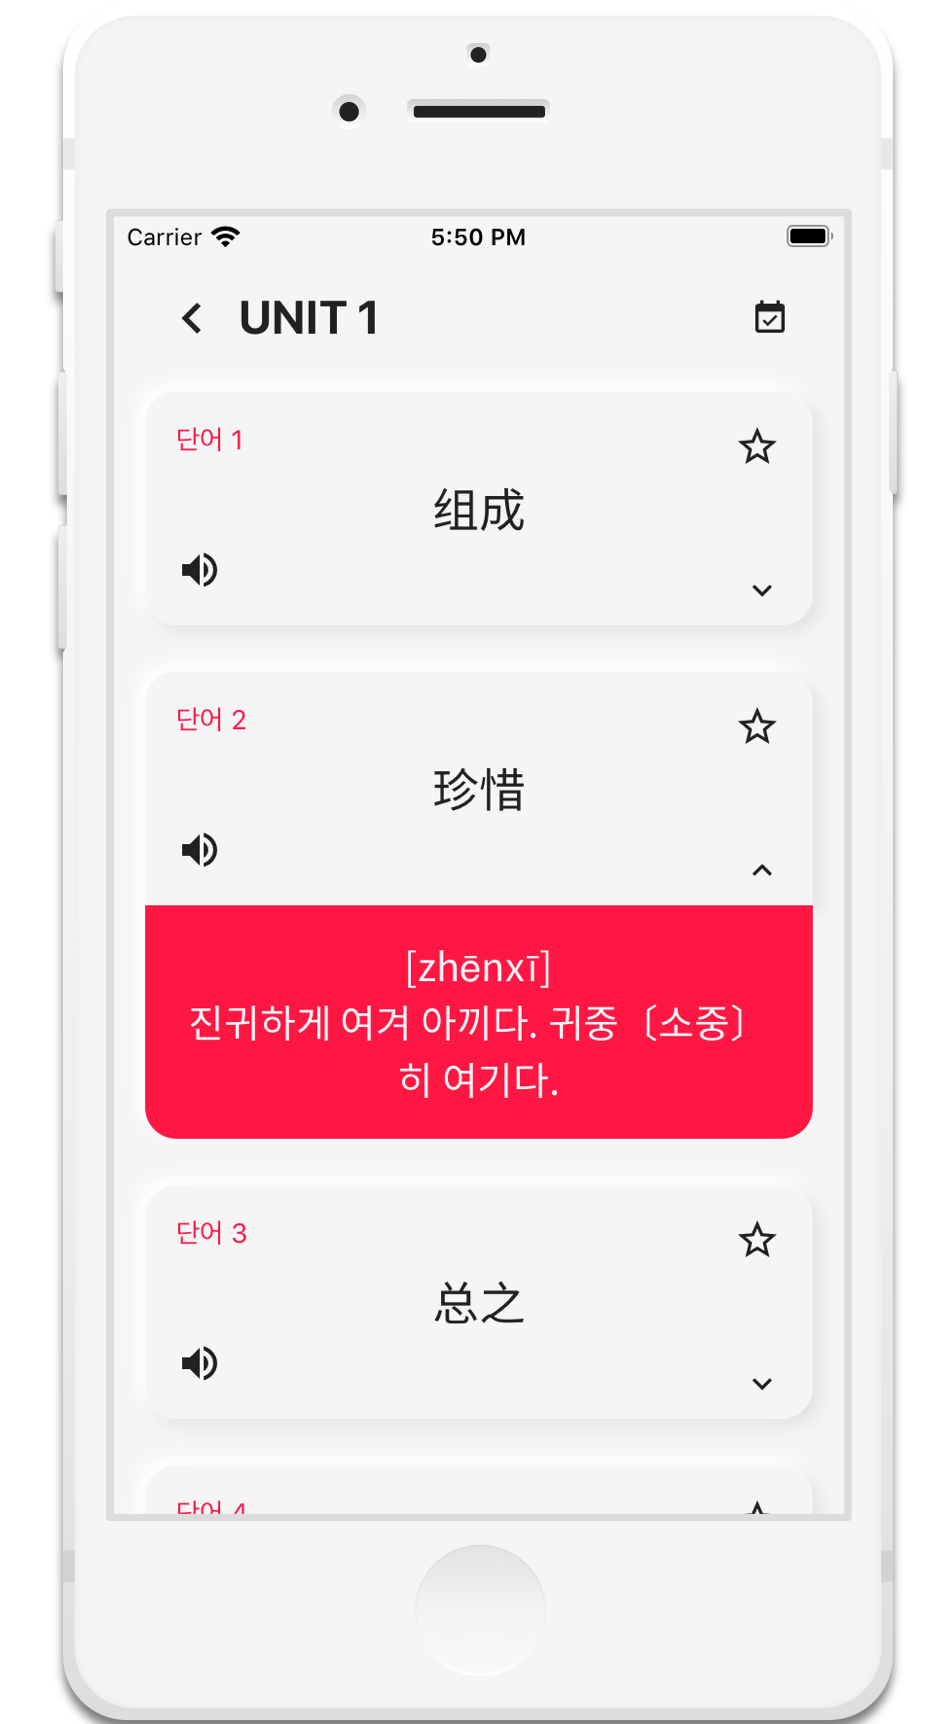 HSK 중국어 단어앱 - 의미, 발음과 음성 제공